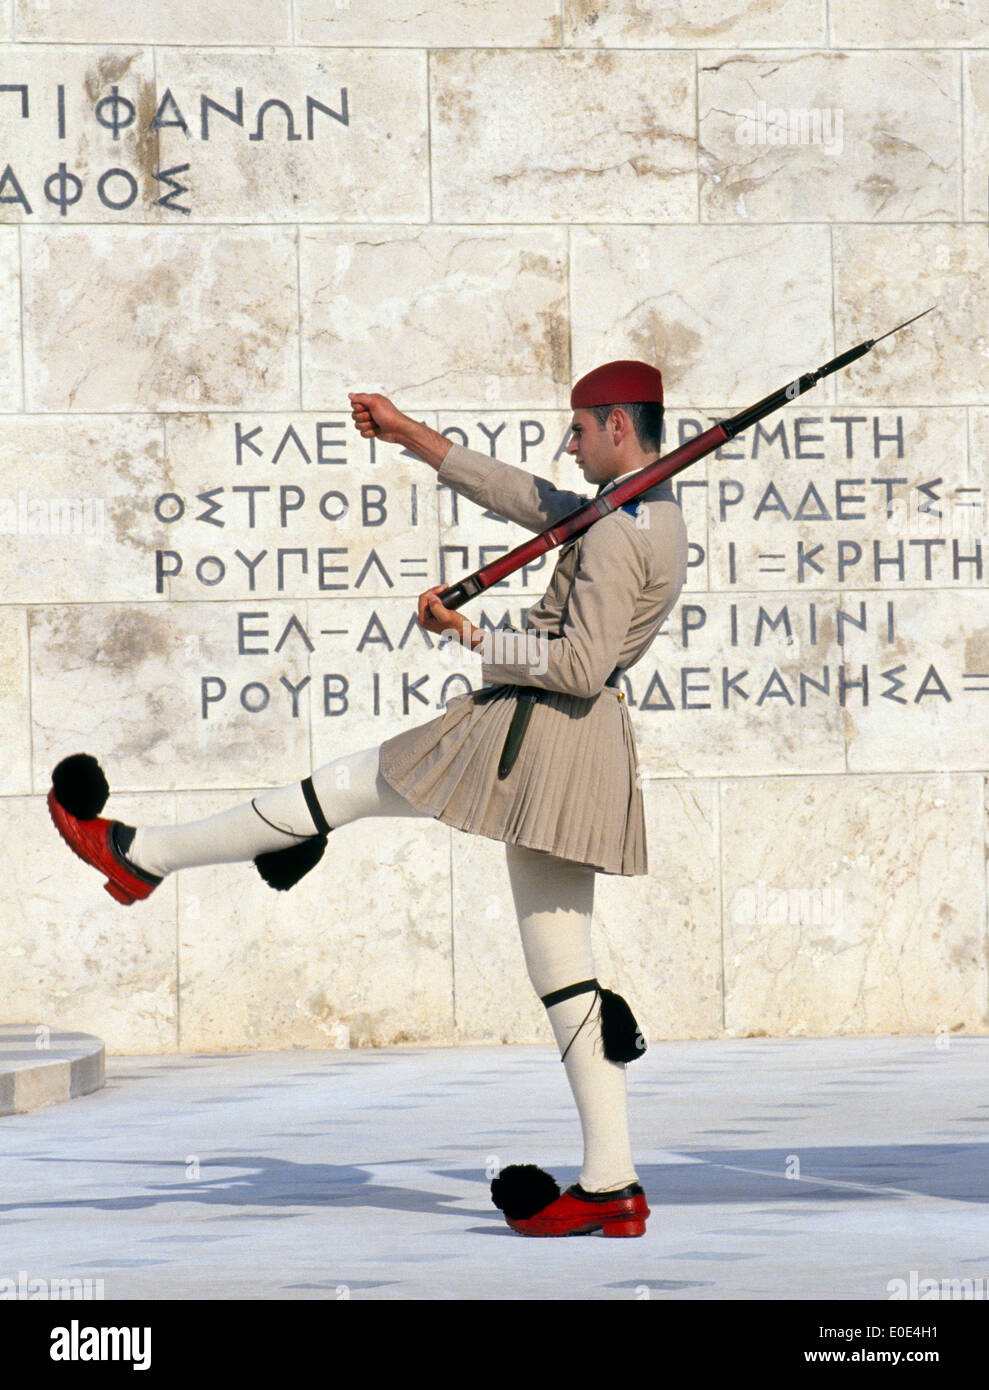 Ein Soldat in der griechischen Präsidentengarde (Evzones) marschiert am Grab des unbekannten Soldaten in Athen, Griechenland. Stockfoto